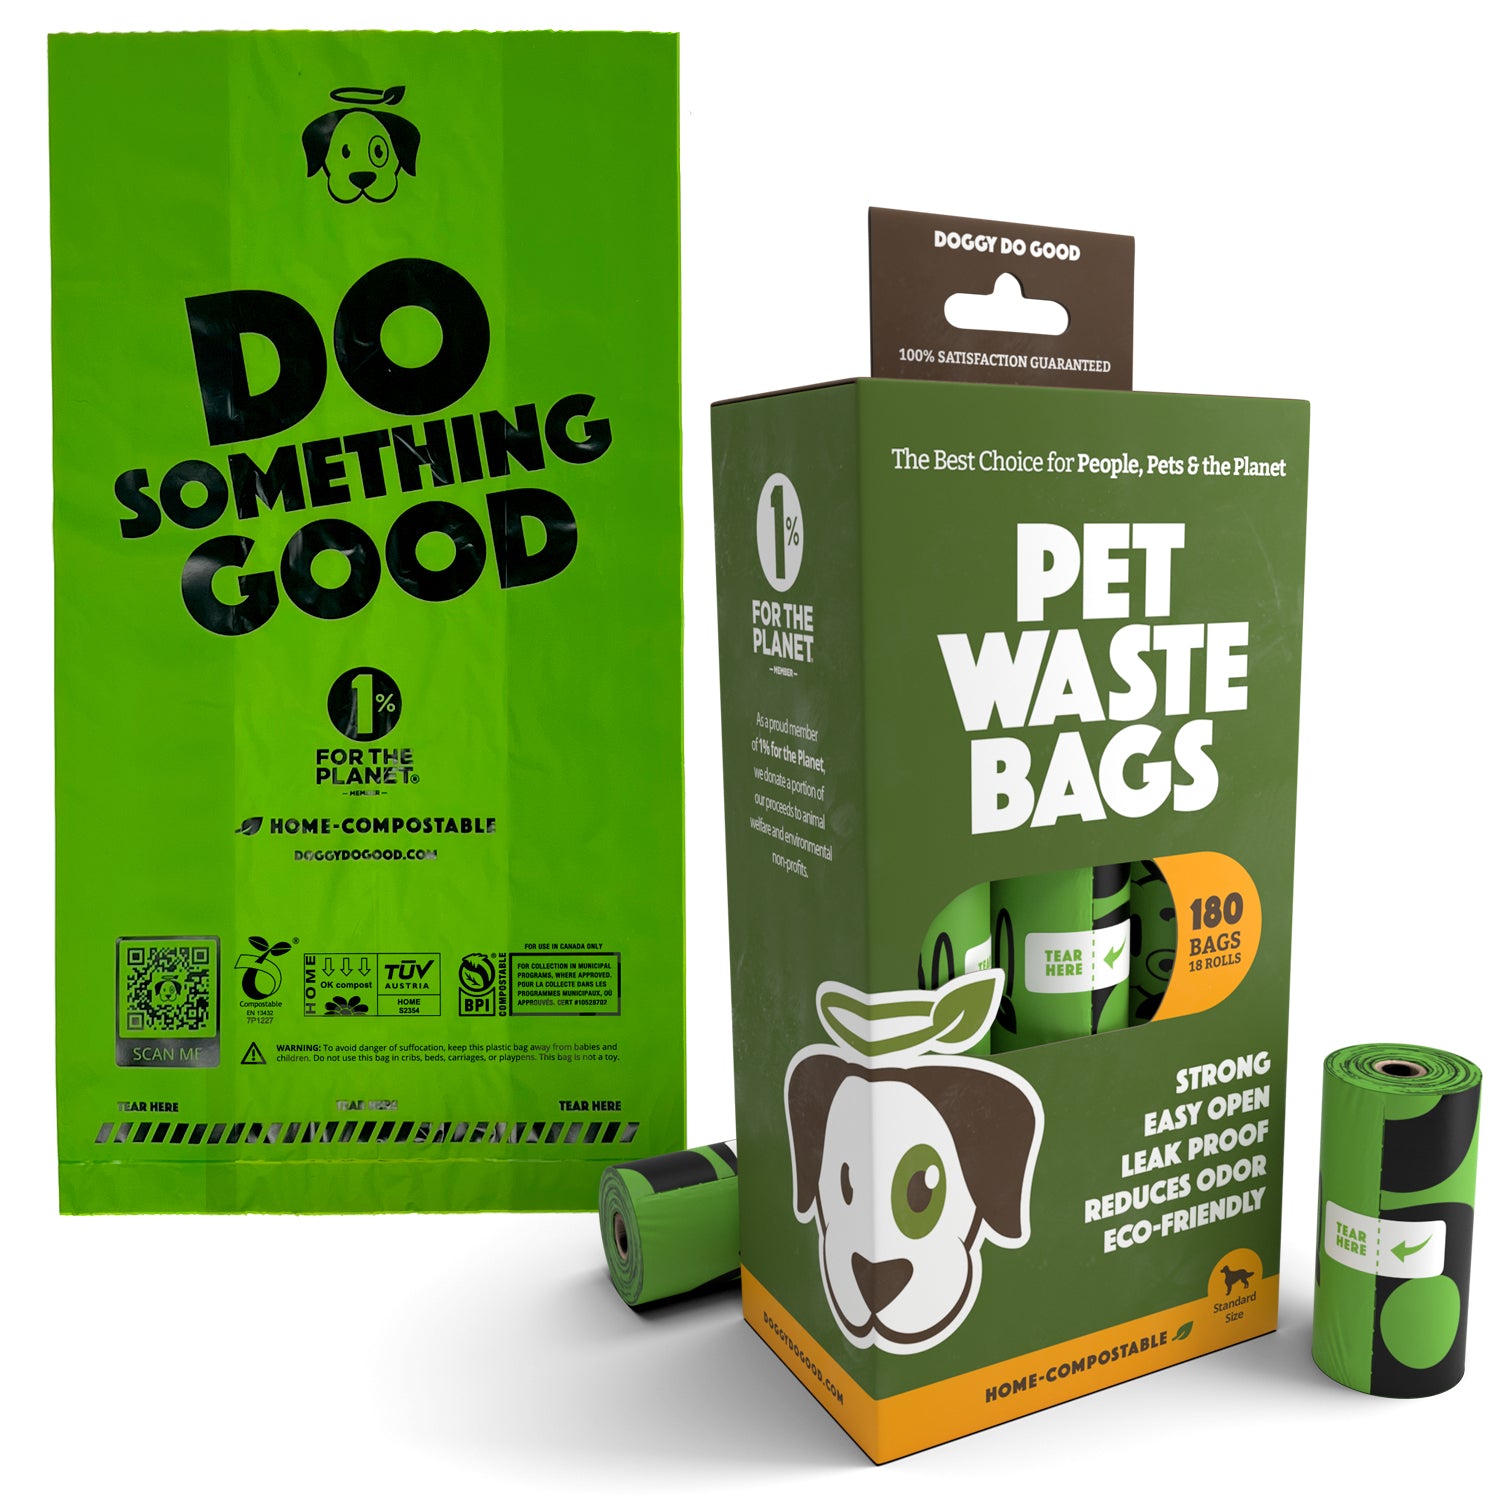 Pet Poop Bags, Black Plastic Garbage Bags, Cats & Dogs Poop Bags